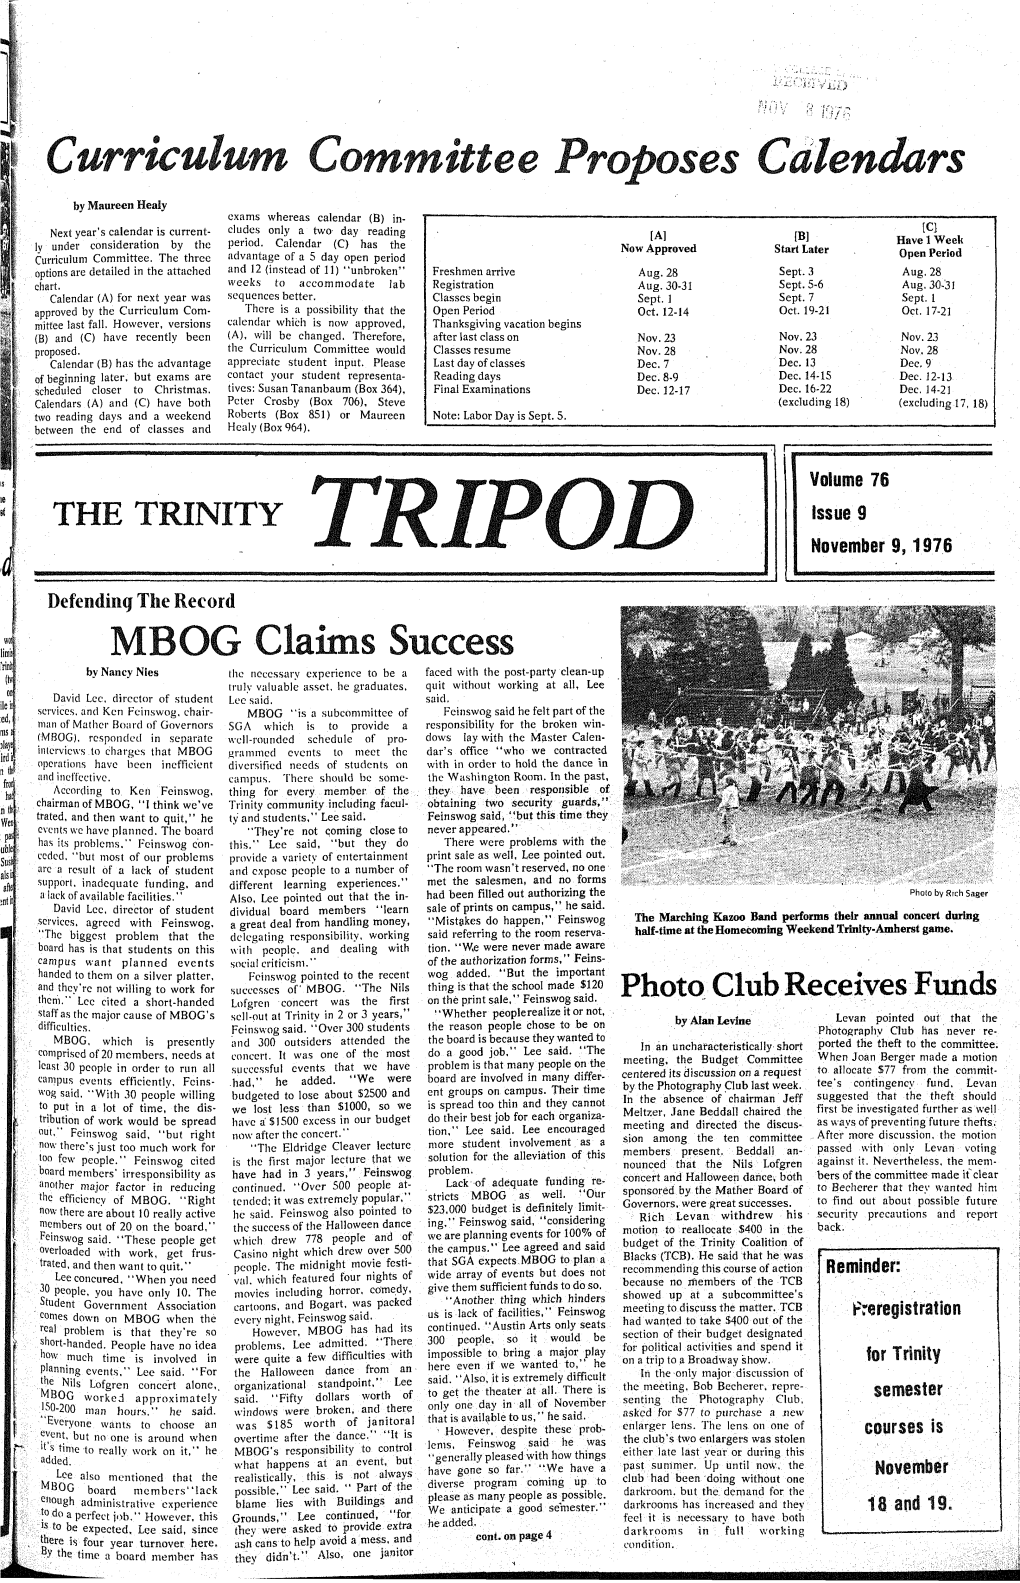 Trinity Tripod, 1976-11-09